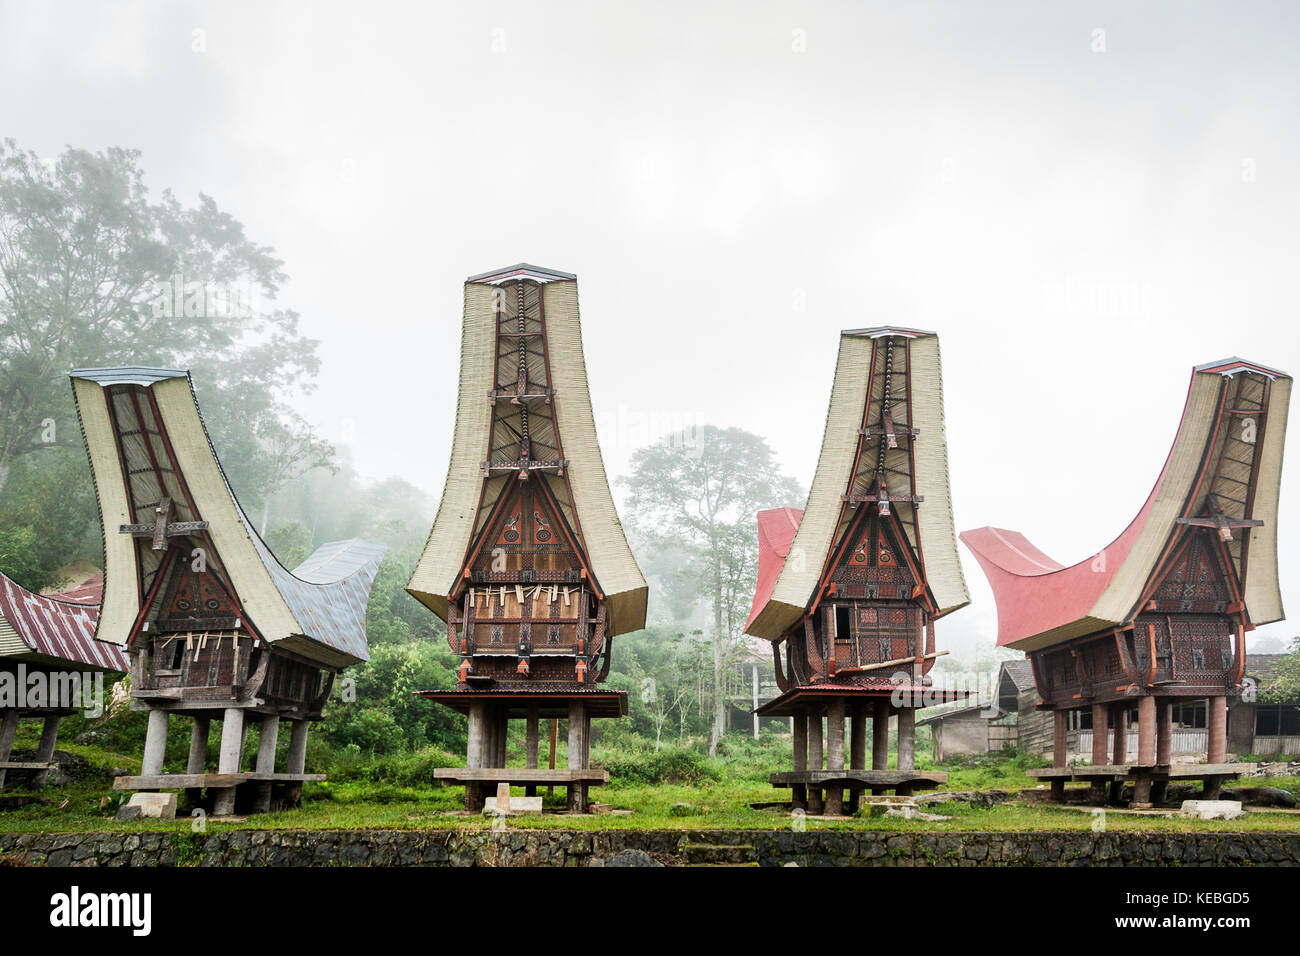 Highland mist con sólidas estructuras de almacenes de arroz en forma de toraja tongkonan. los edificios tradicionales de la cultura indígena de Tana Toraja Foto de stock